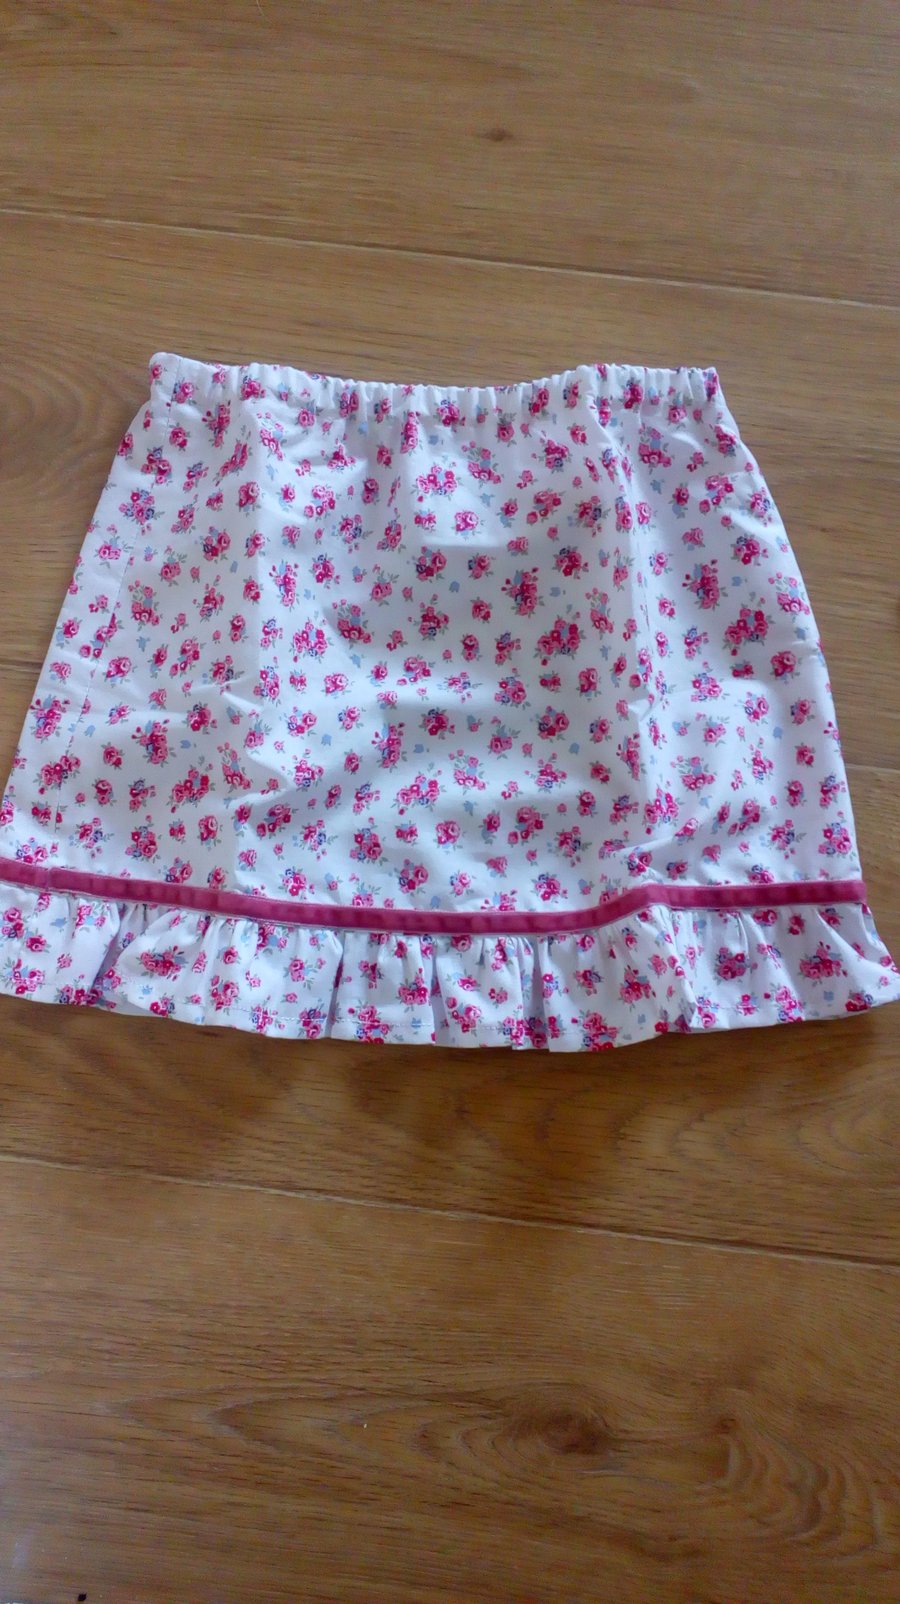 Handmade baby skirt